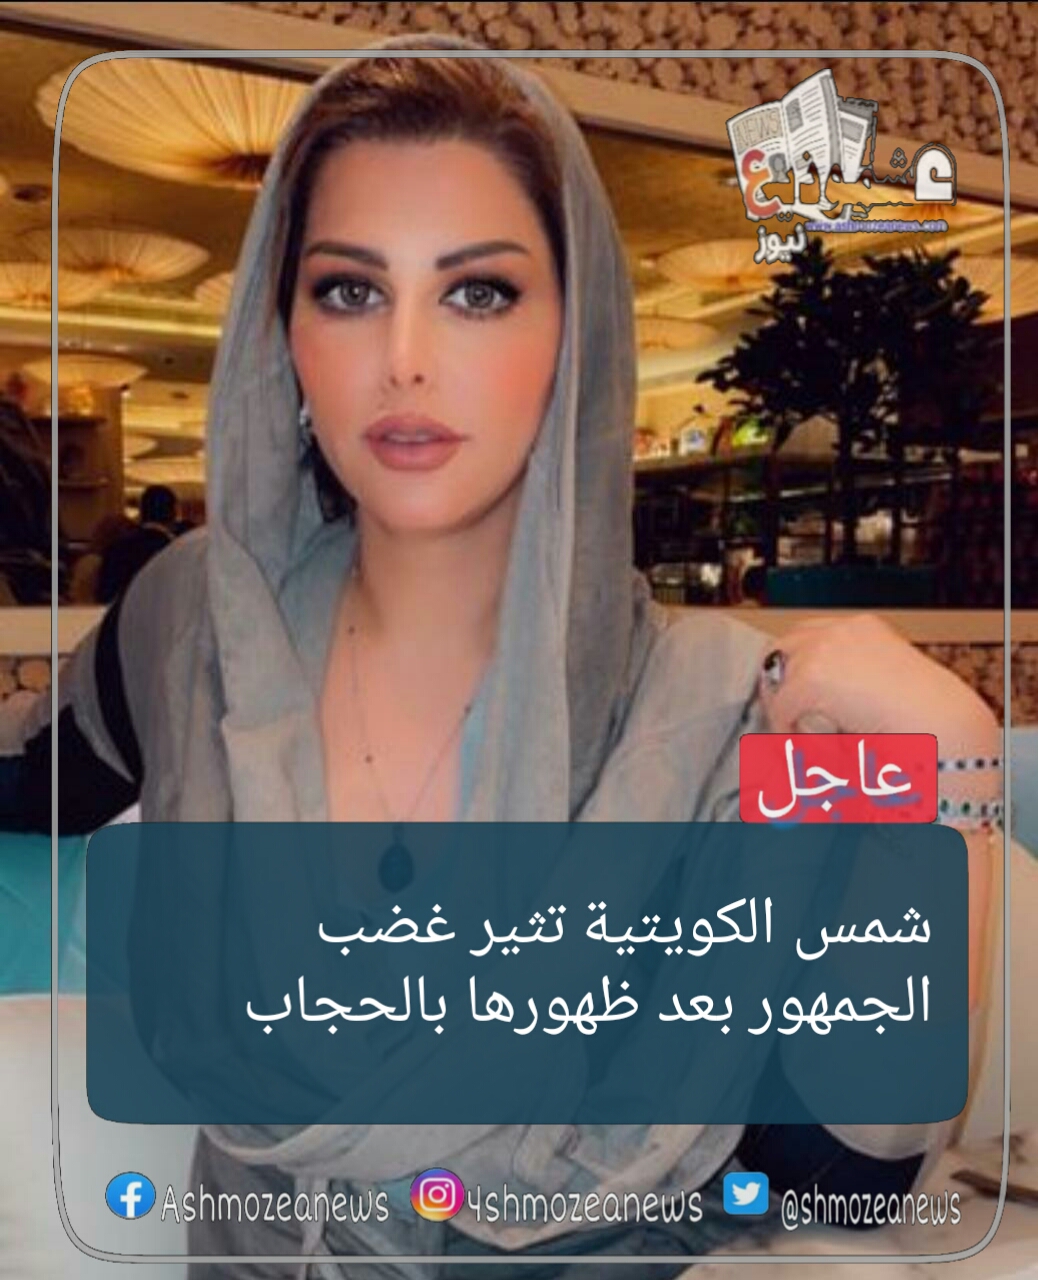 شمس الكويتية تثير غضب الجمهور بعد ظهورها بالحجاب